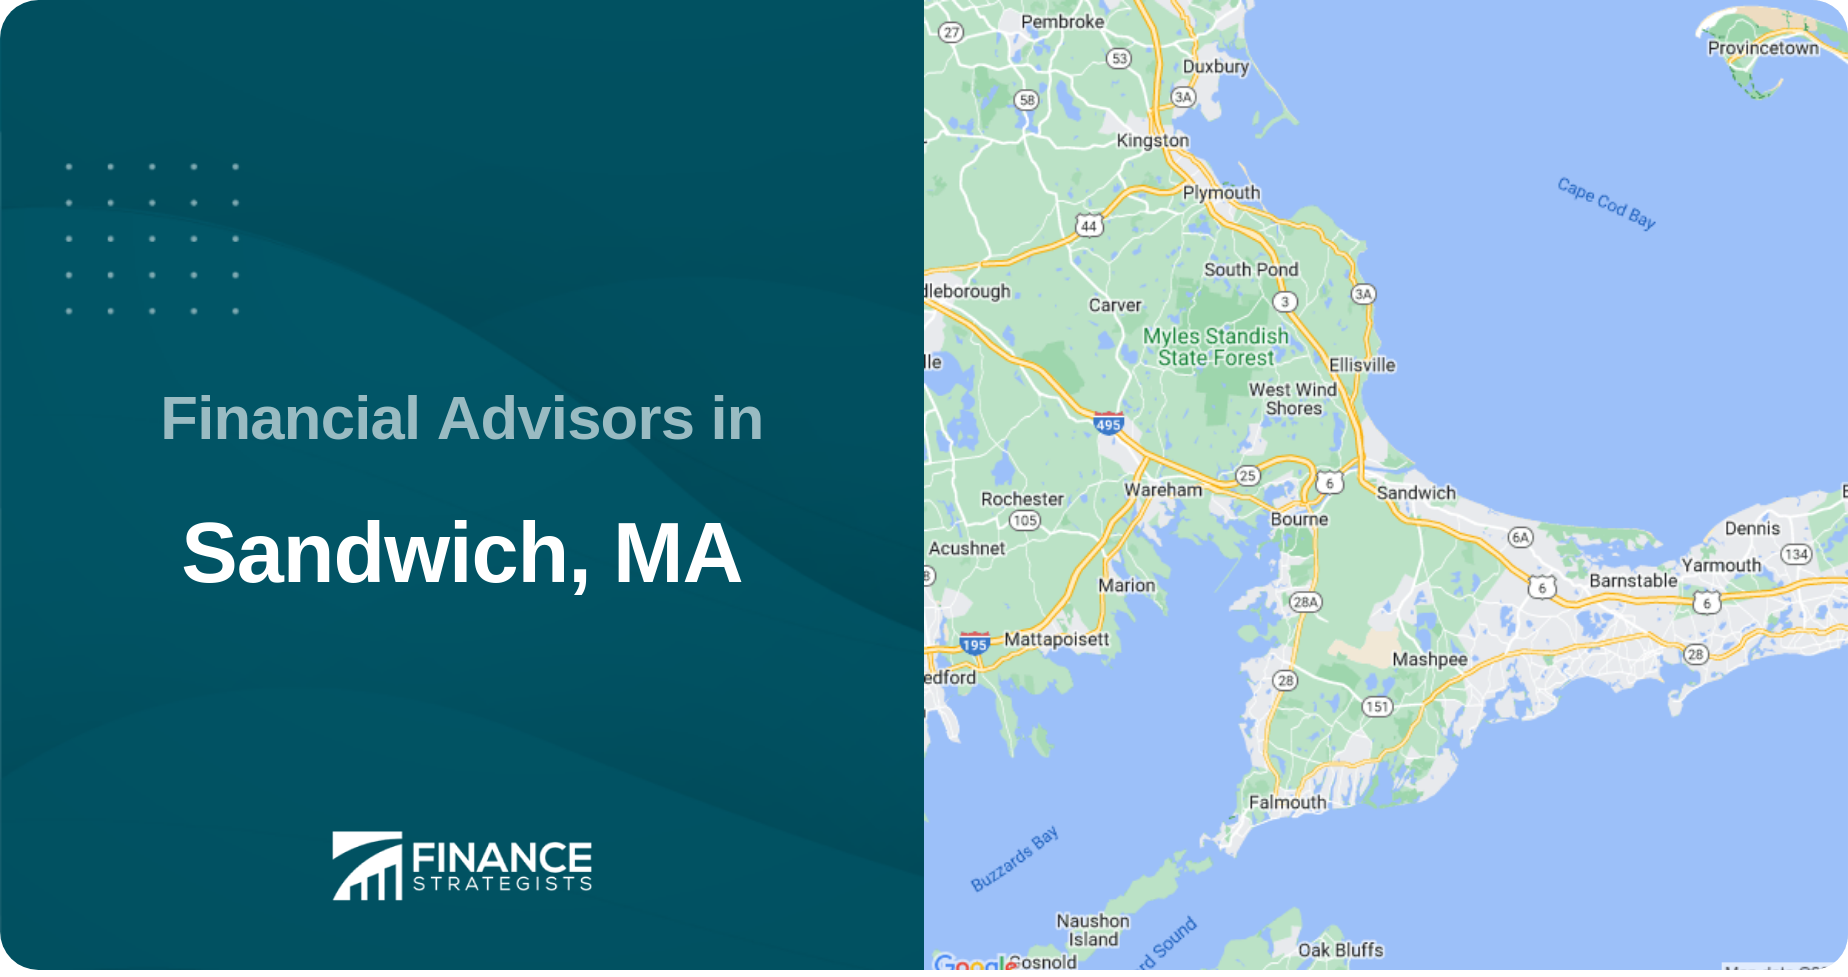 Financial Advisors in Sandwich, MA